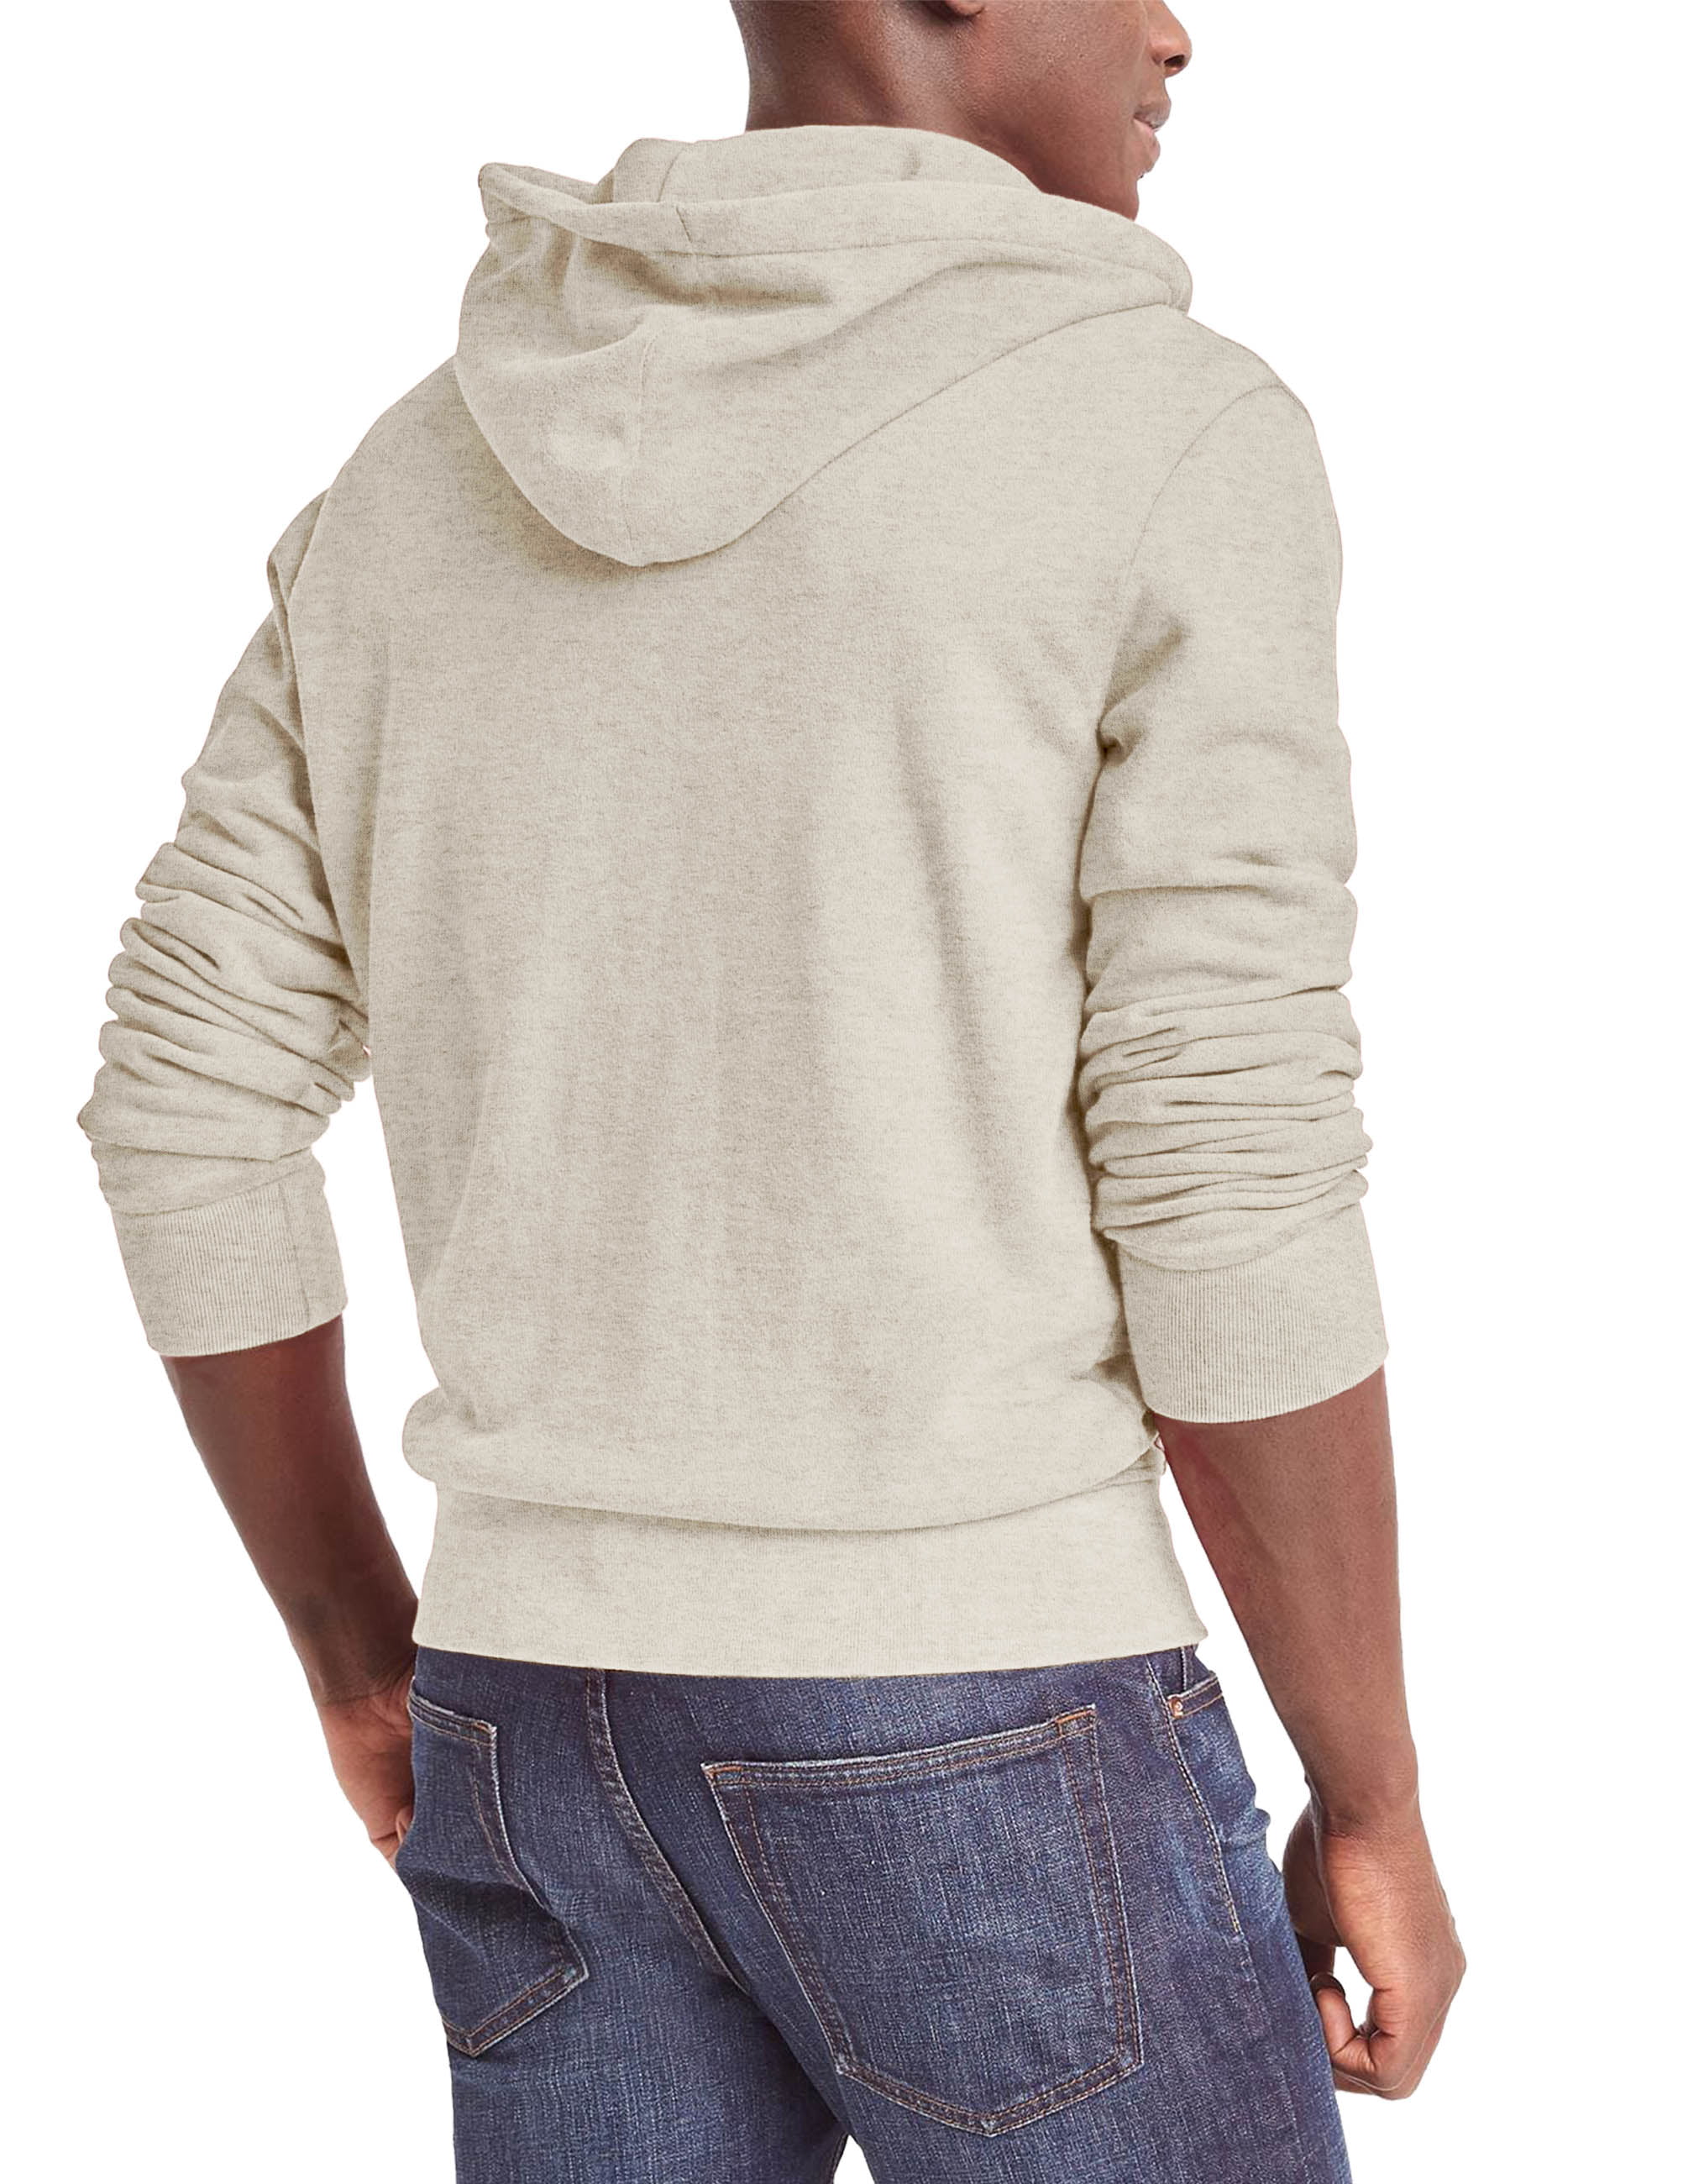 Ma Croix - Mens Heavy Zip Up Hoodie Premium Sweatshirt Long Sleeve ...